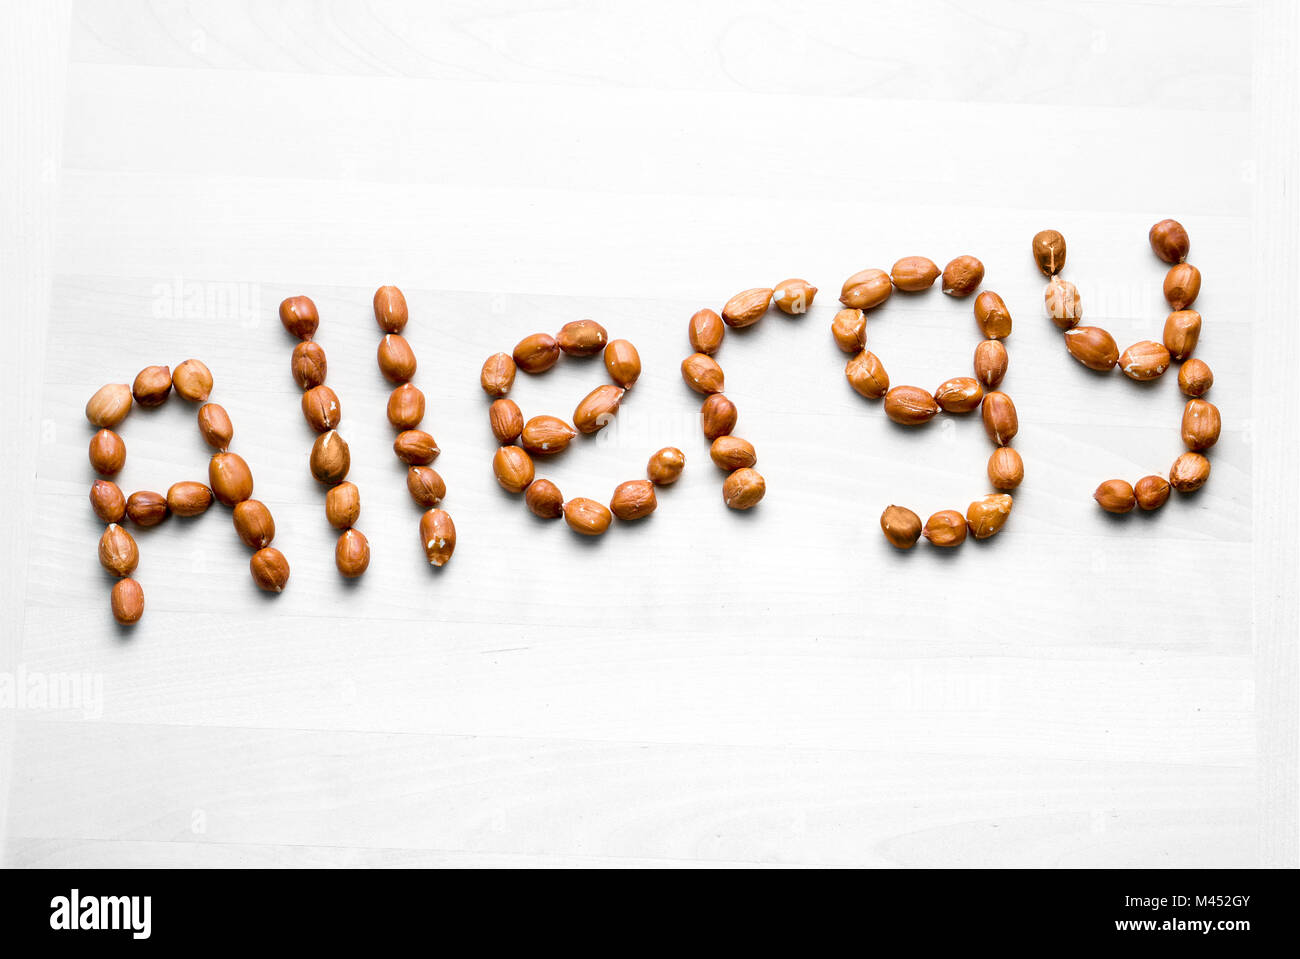 Allergie mit Erdnüssen geschrieben. Wort und Text aus Nüssen. Erdnüsse auf weissem Holztisch oder Board. Allergische Reaktion und Ernährung problem Konzept Stockfoto